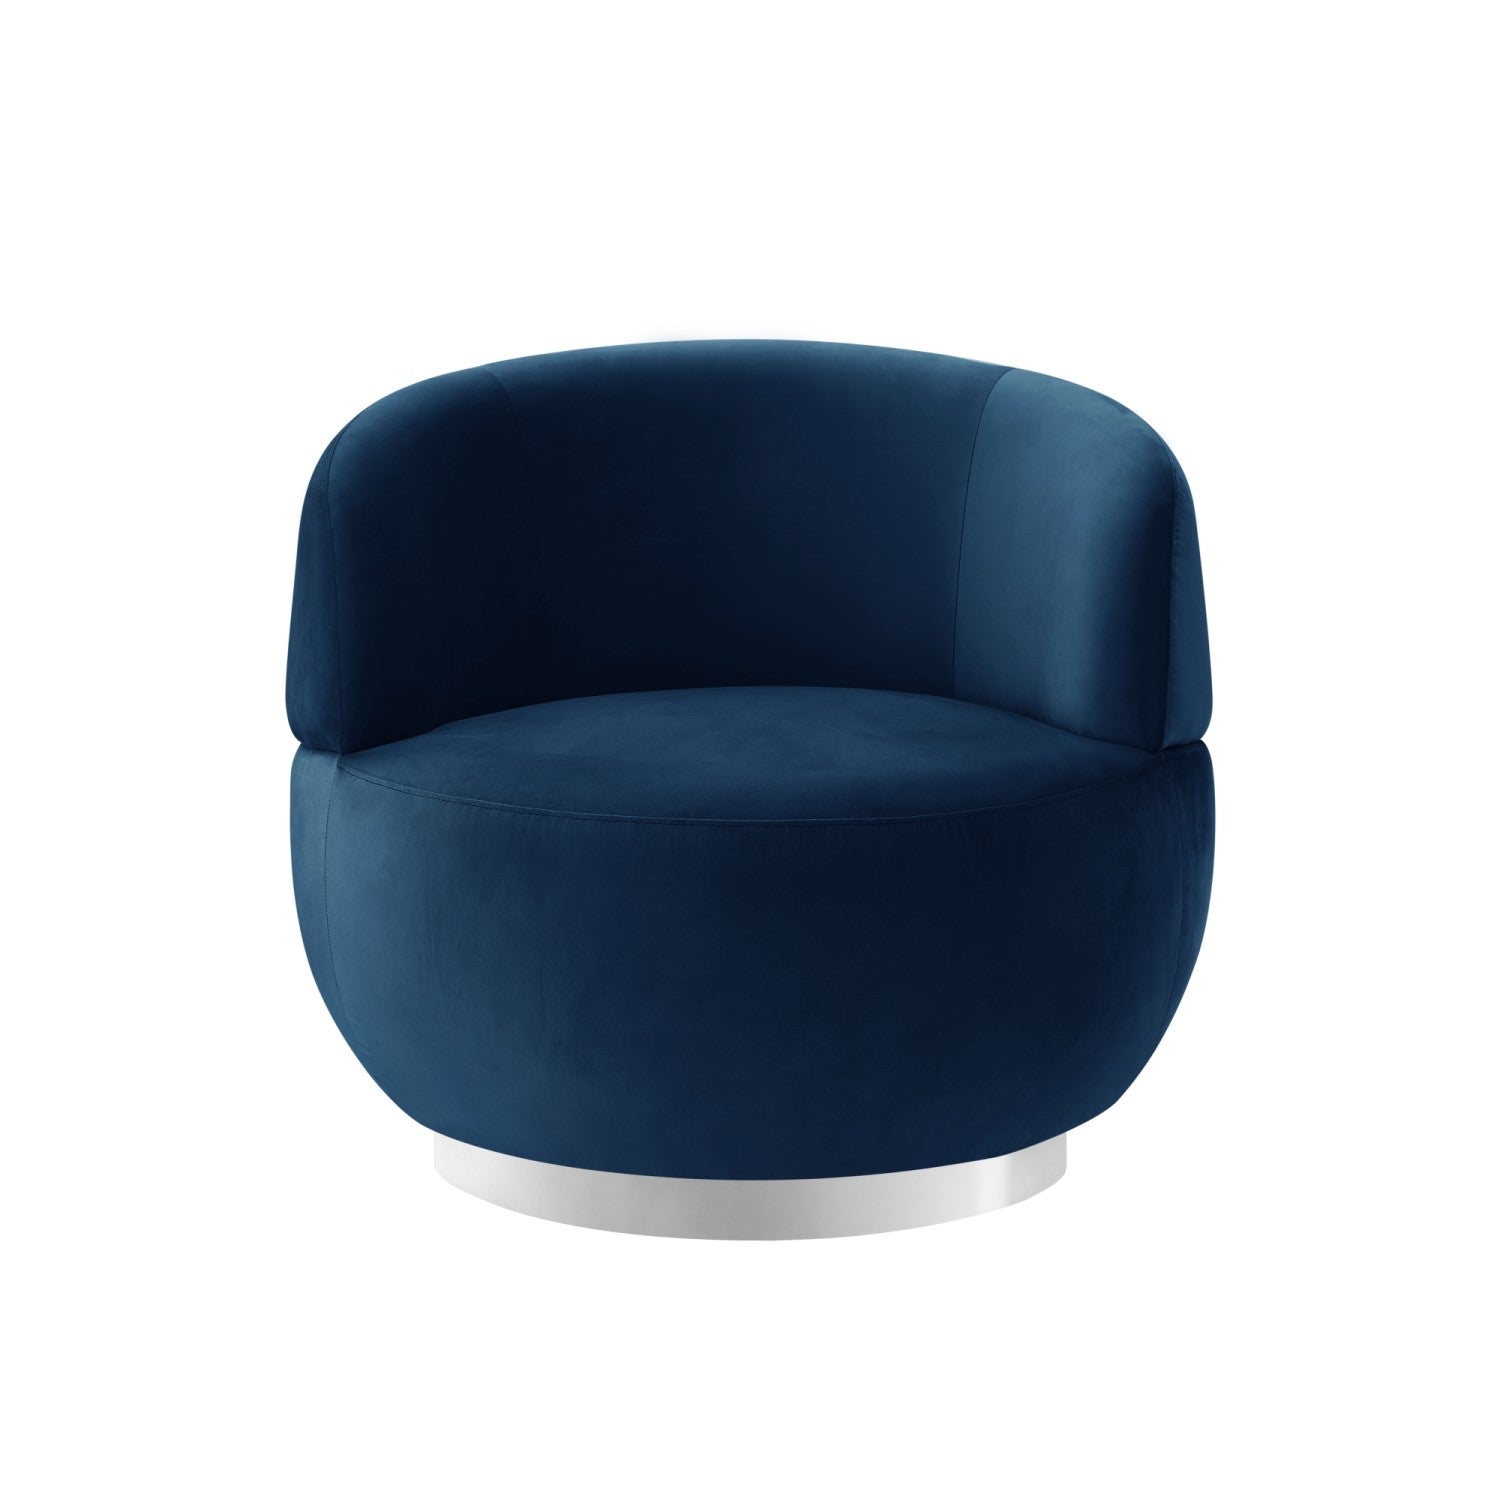 Kassandra Modern Accent Chair Swivel Chrome Base for Living Room ...